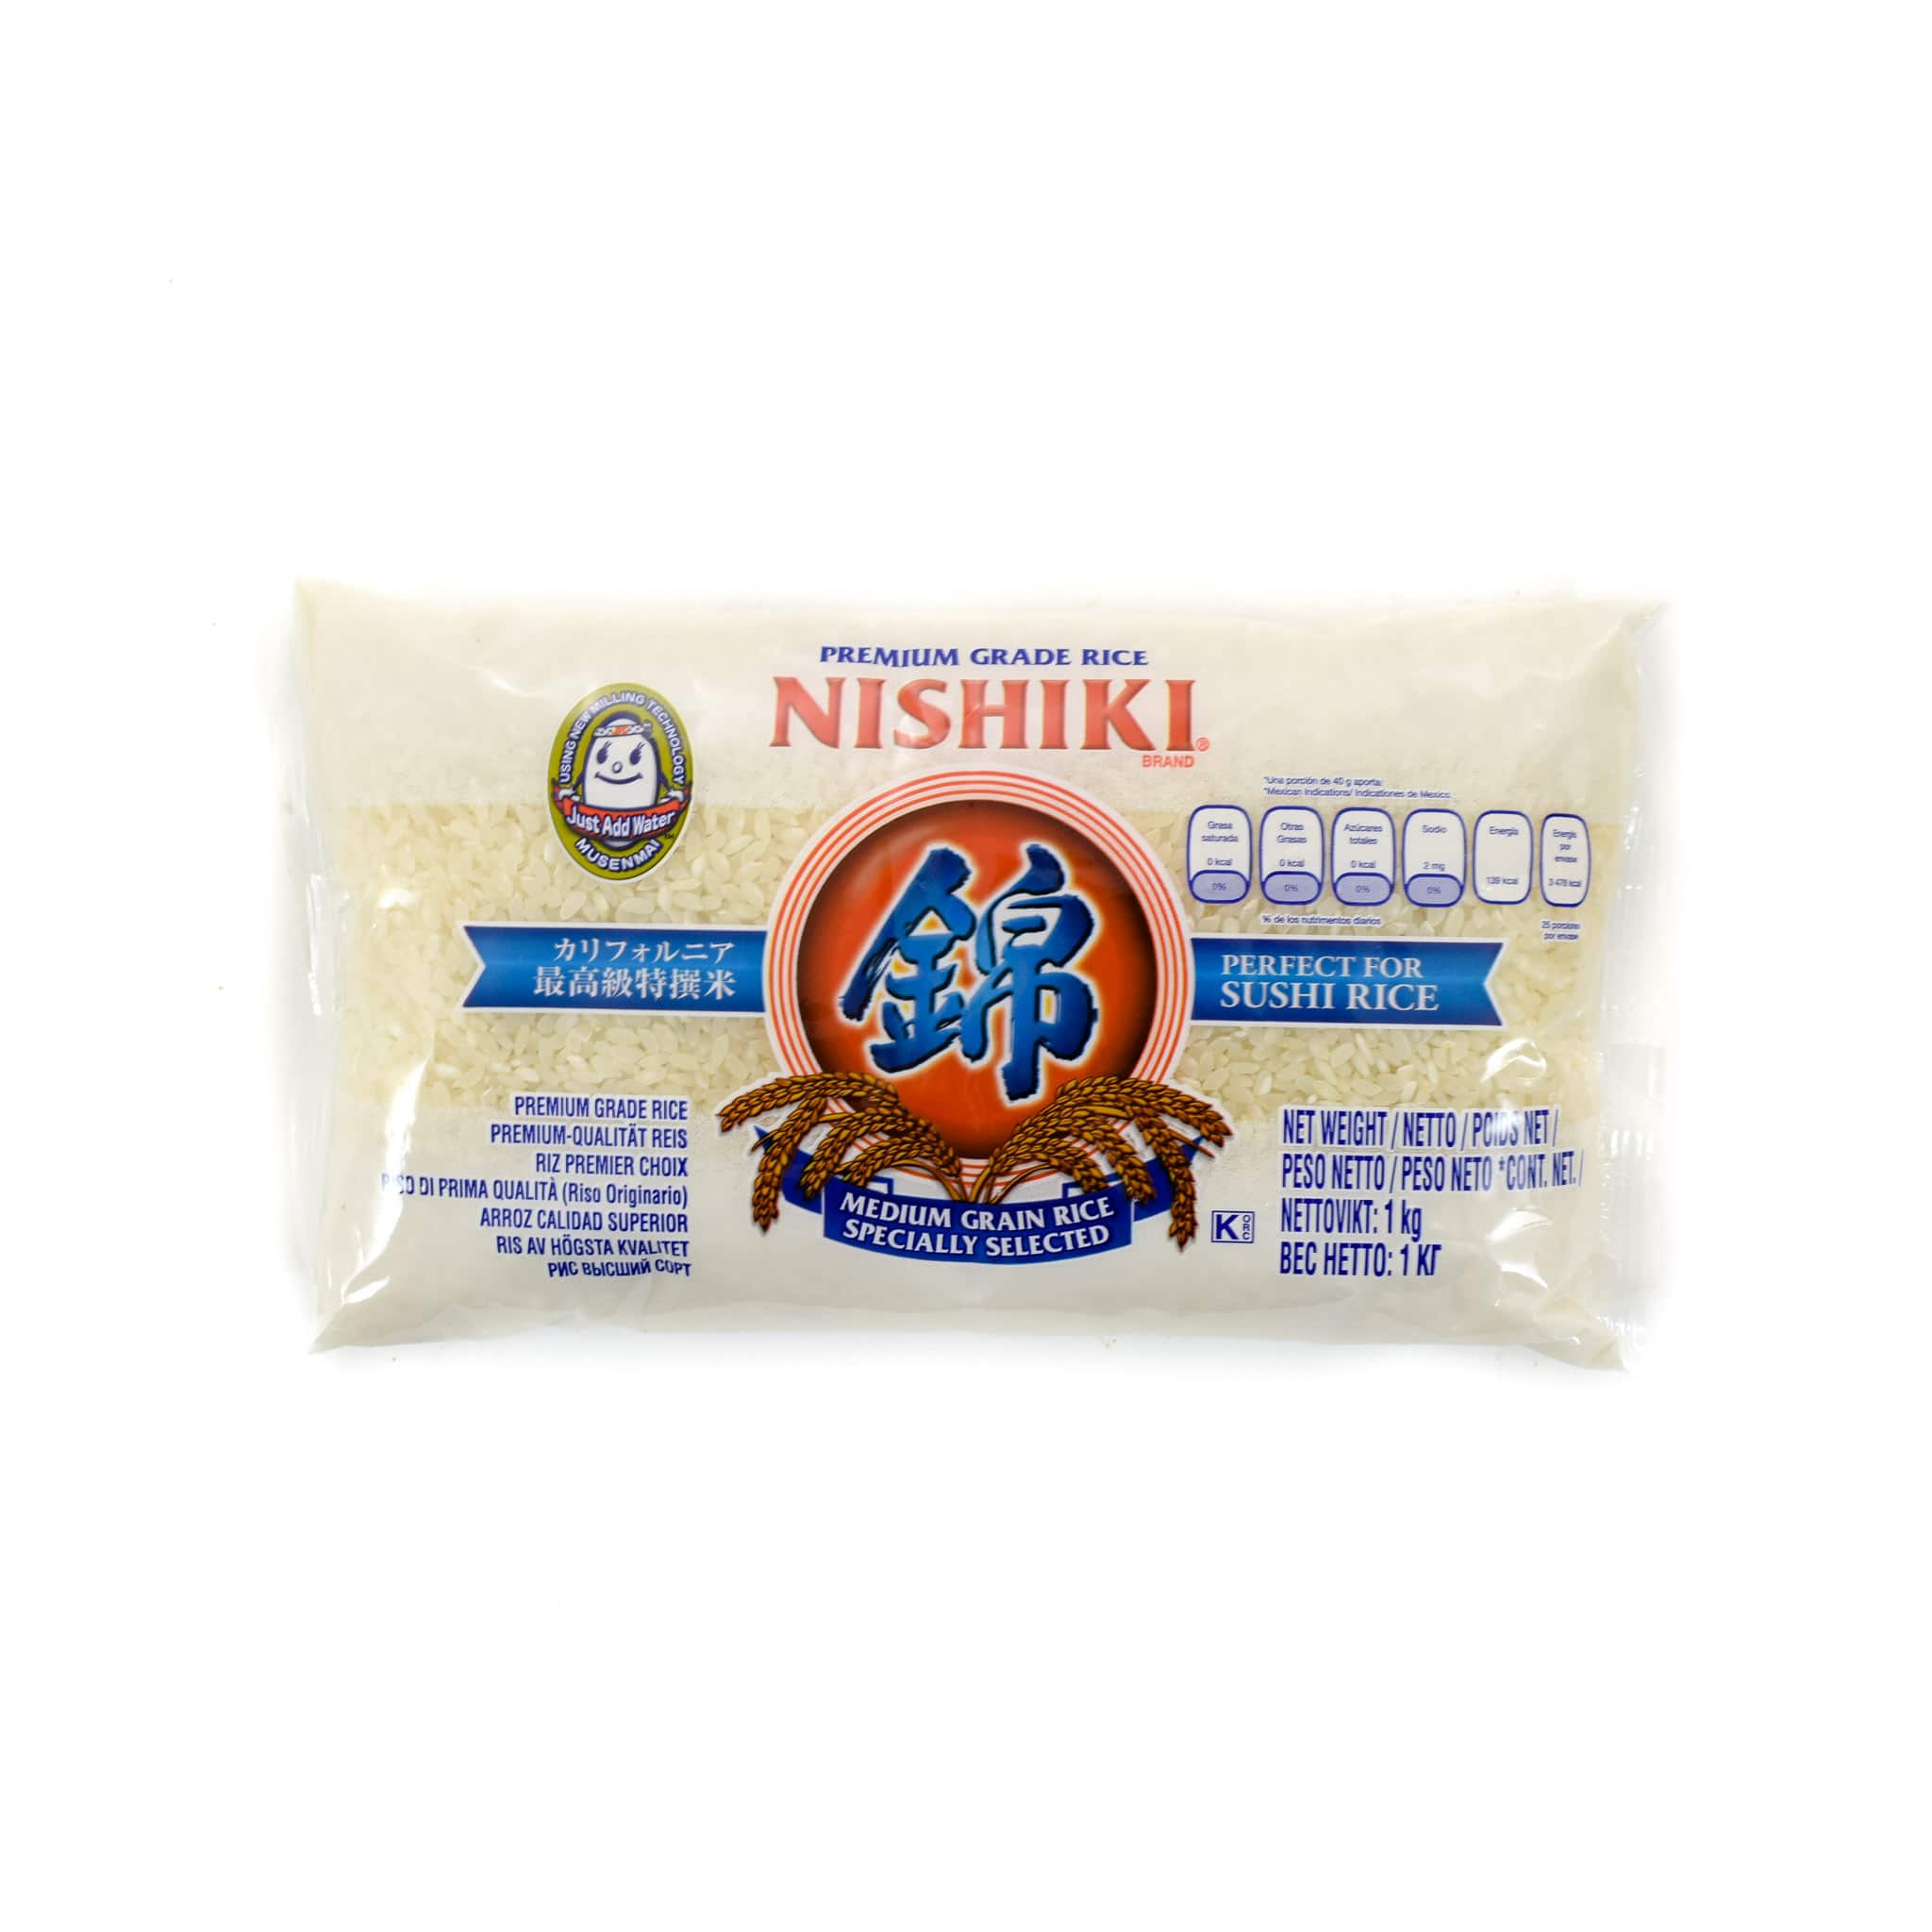 Nishiki Medium Grain Rice 1kg